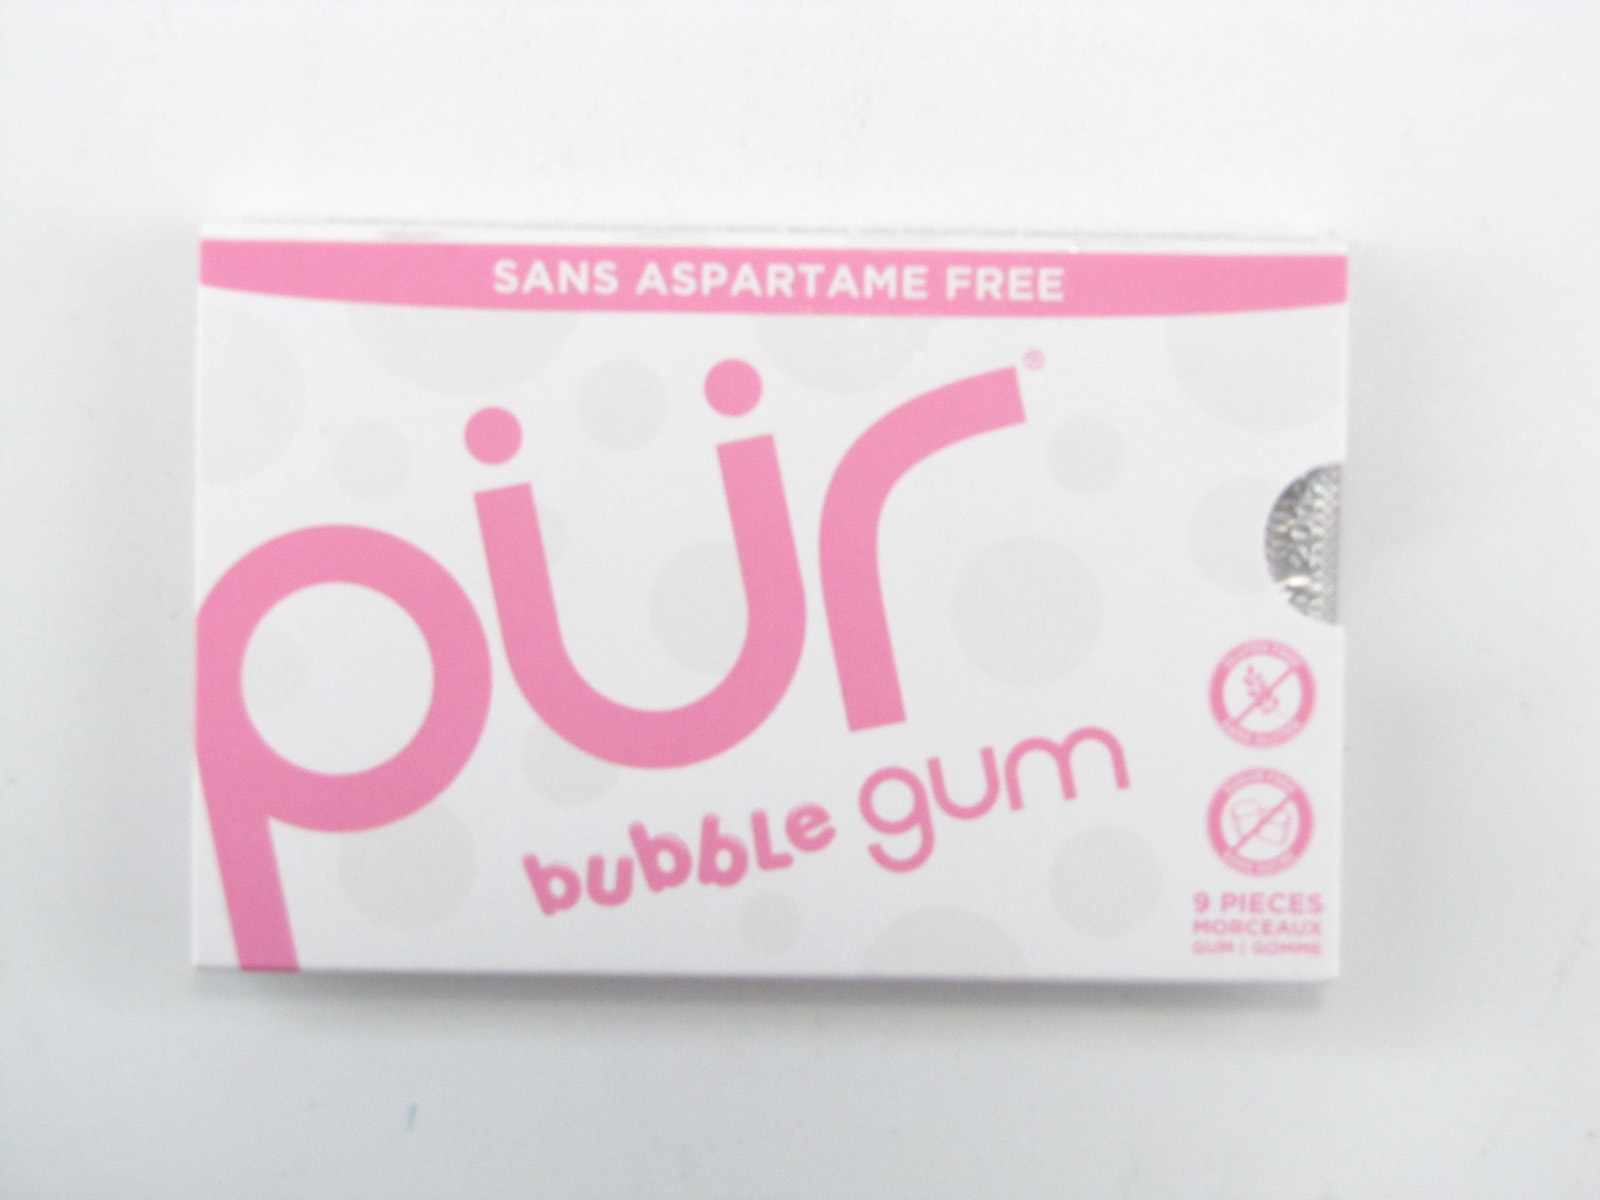 Pur Gum - Bubble Gum - front view